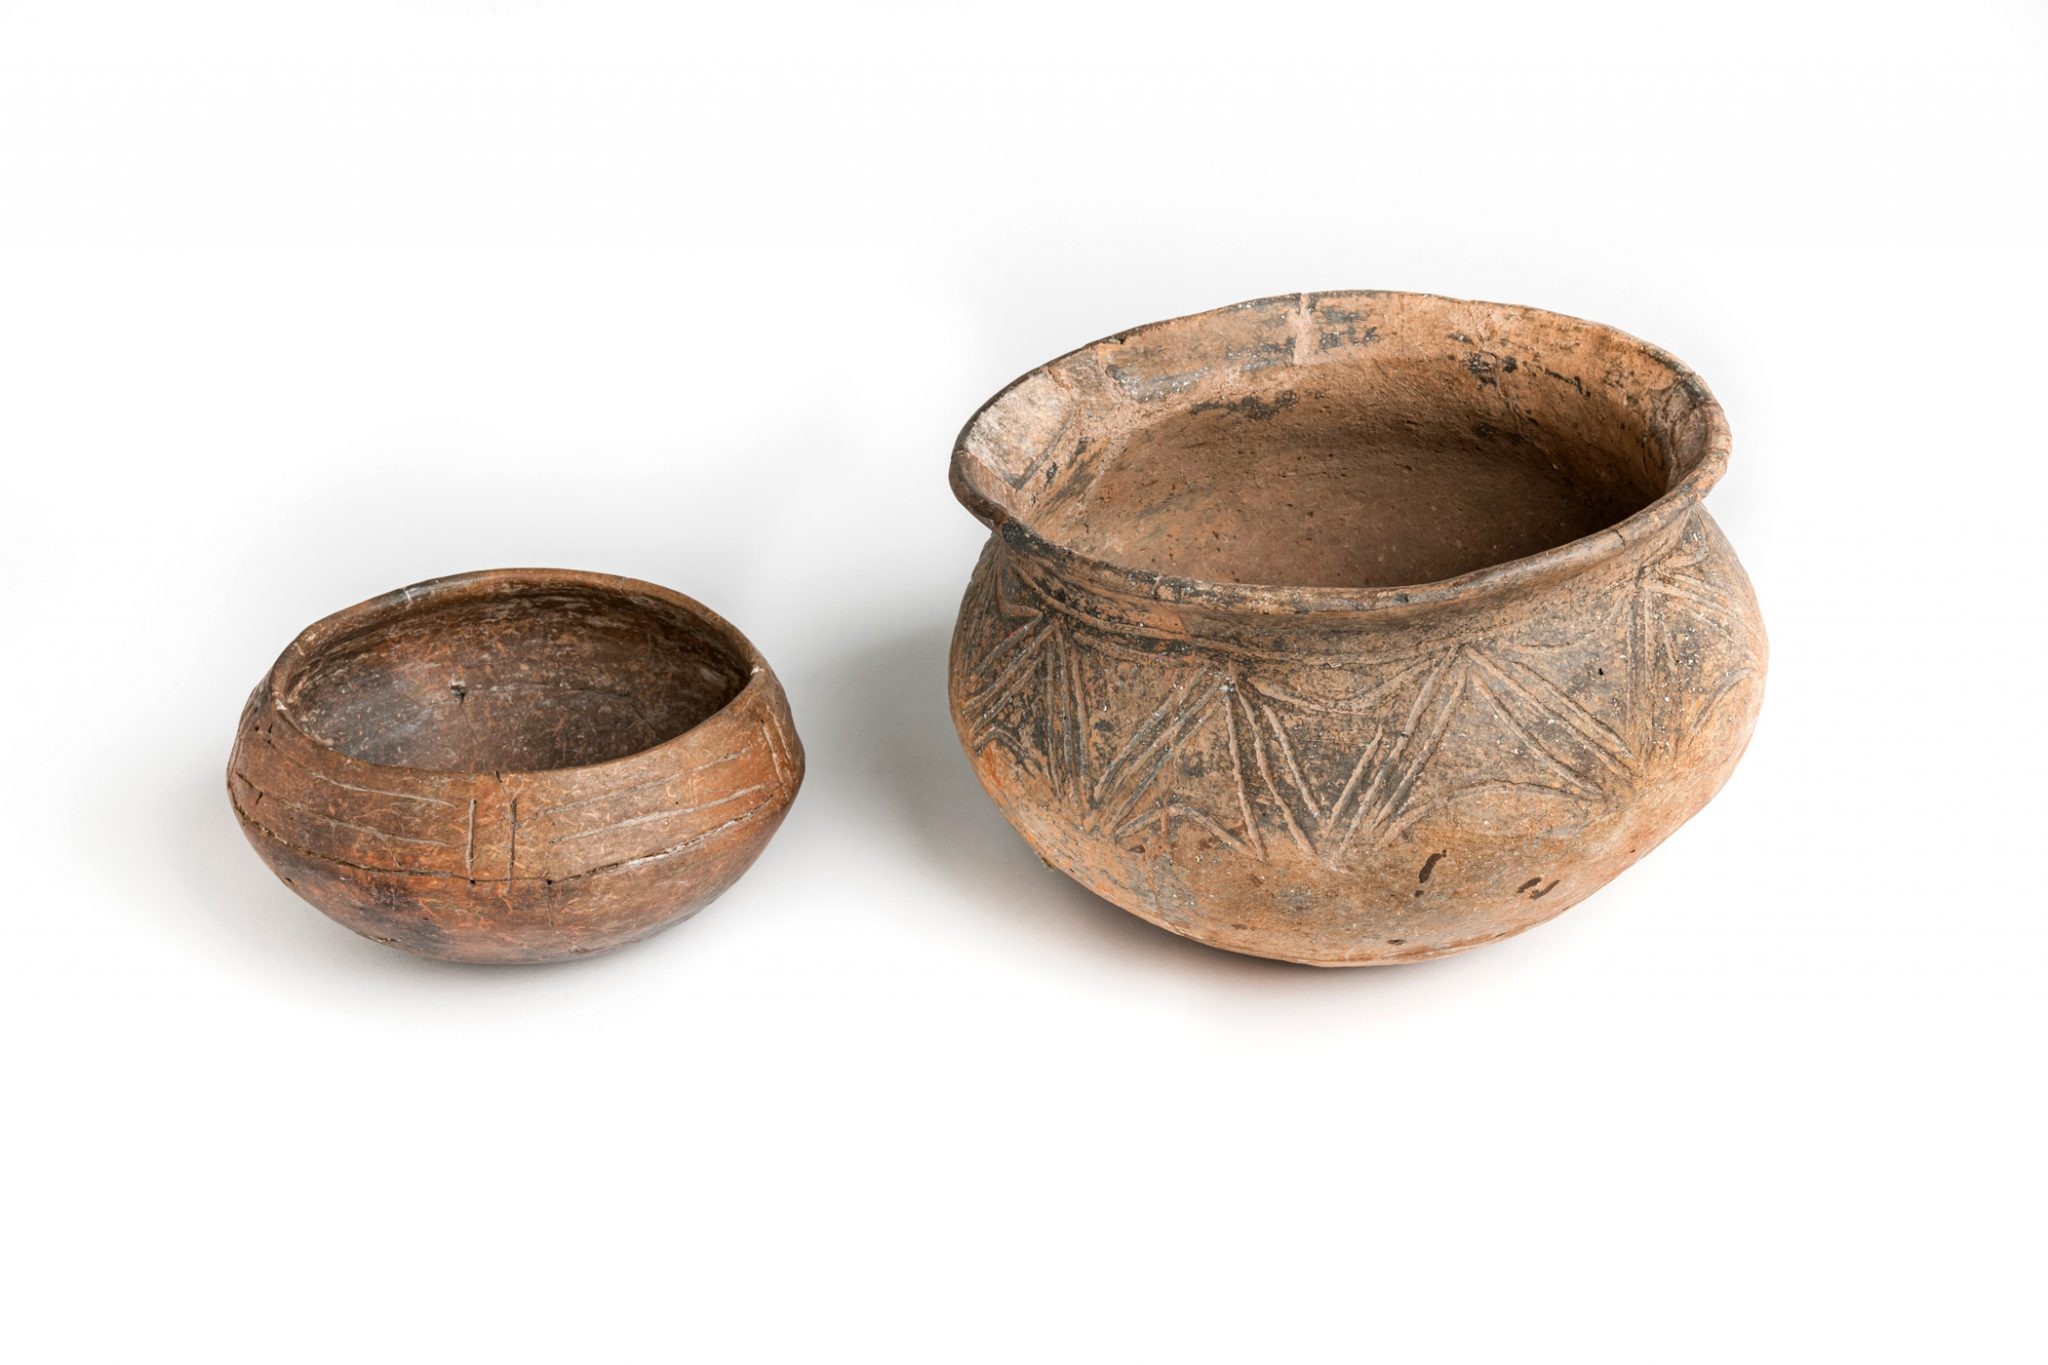 Cerâmicas encontradas no Mar do Caribe (Foto: Lindsay Bloch/ Florida Museum)